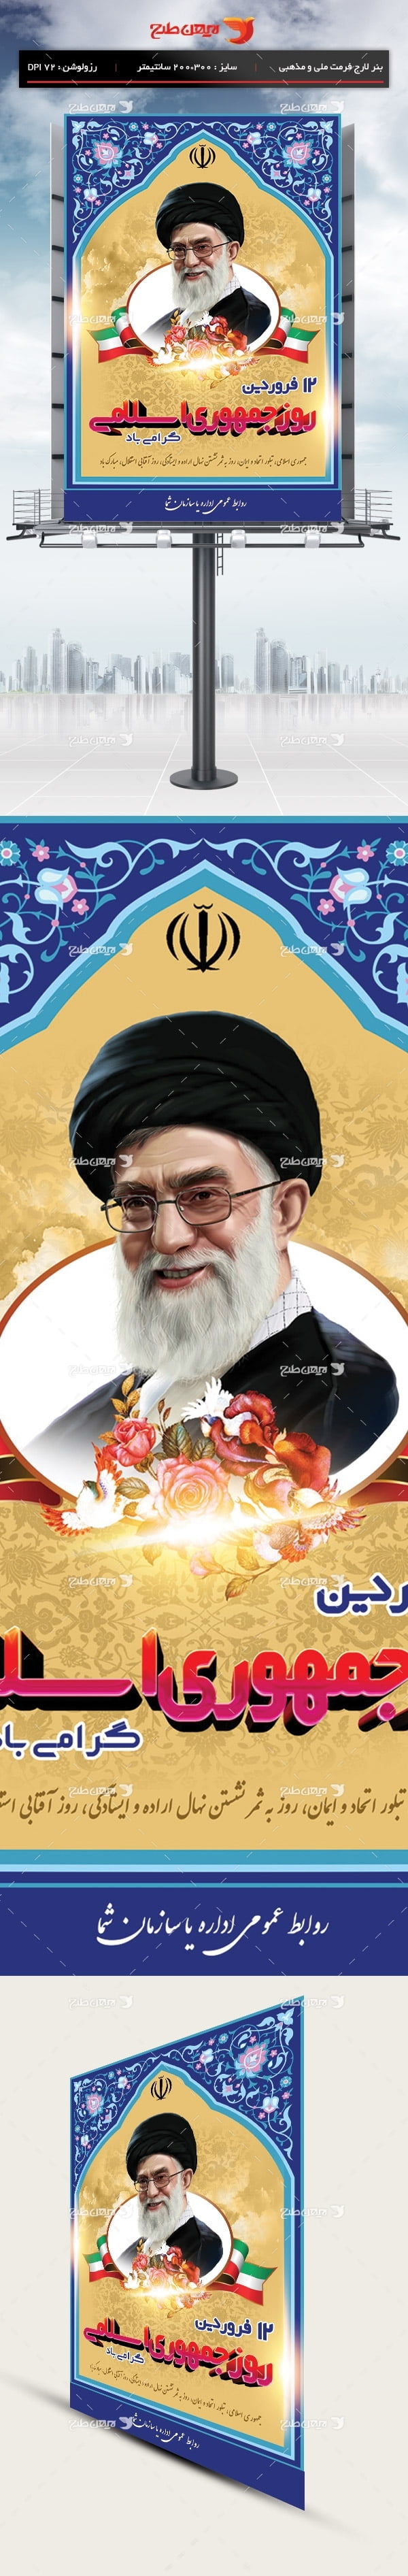 طرح بنر لایه باز روز جمهوری اسلامی - 12 فروردین